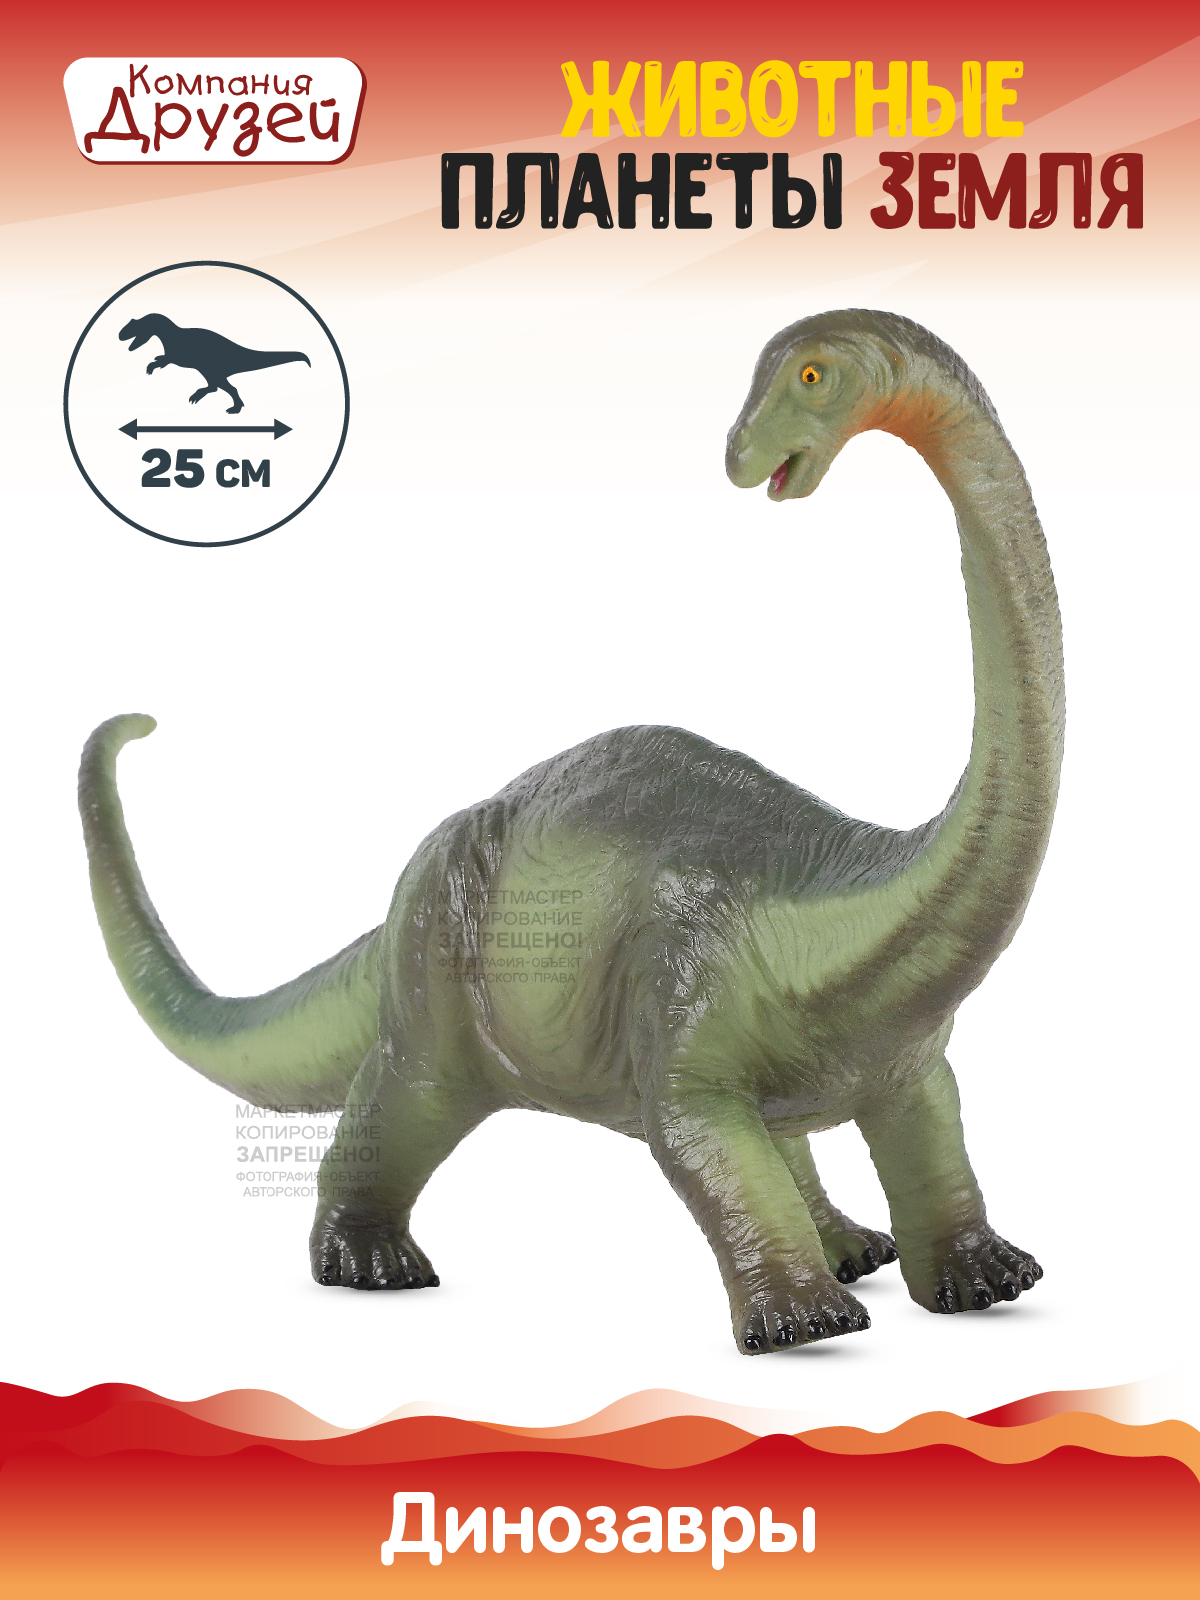 Фигурка Динозавр из серии Животные планеты Земля Компания друзей зеленый JB0208314 динозавр с чипом компания друзей животные планеты земля звук рёв животного jb0207078